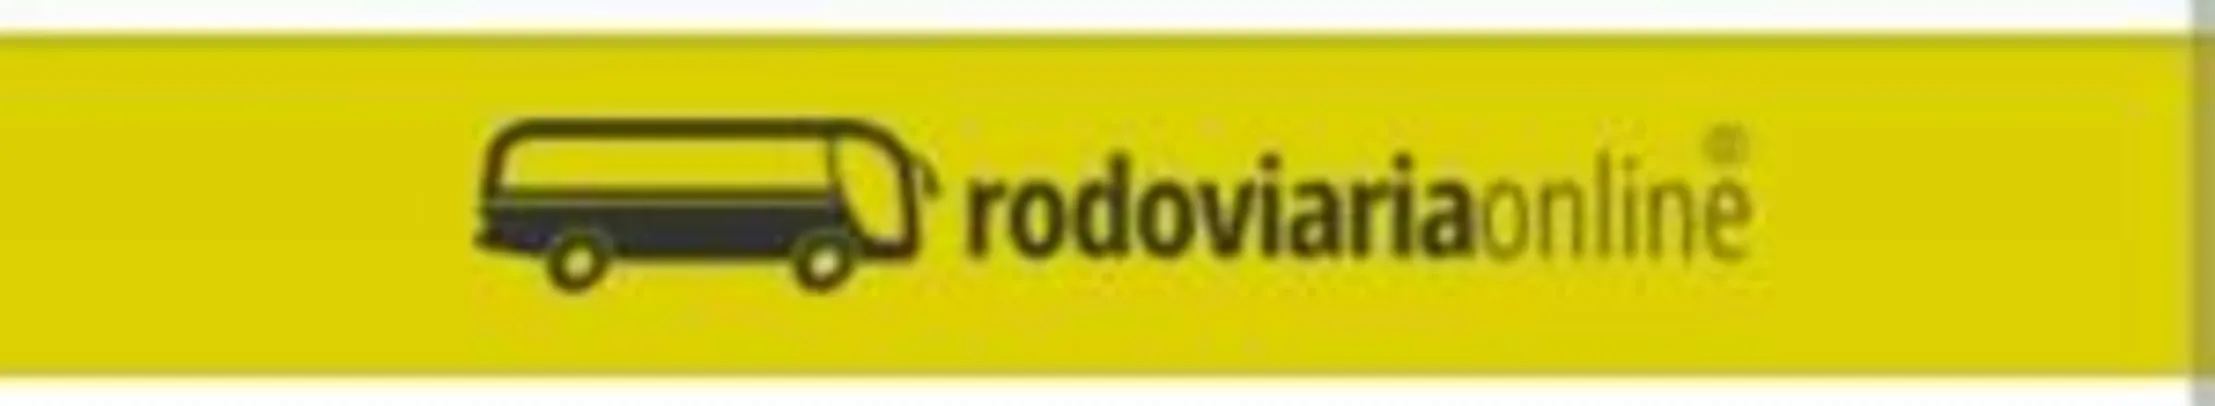 Agora você cliente Rodoviariaonline também é 99